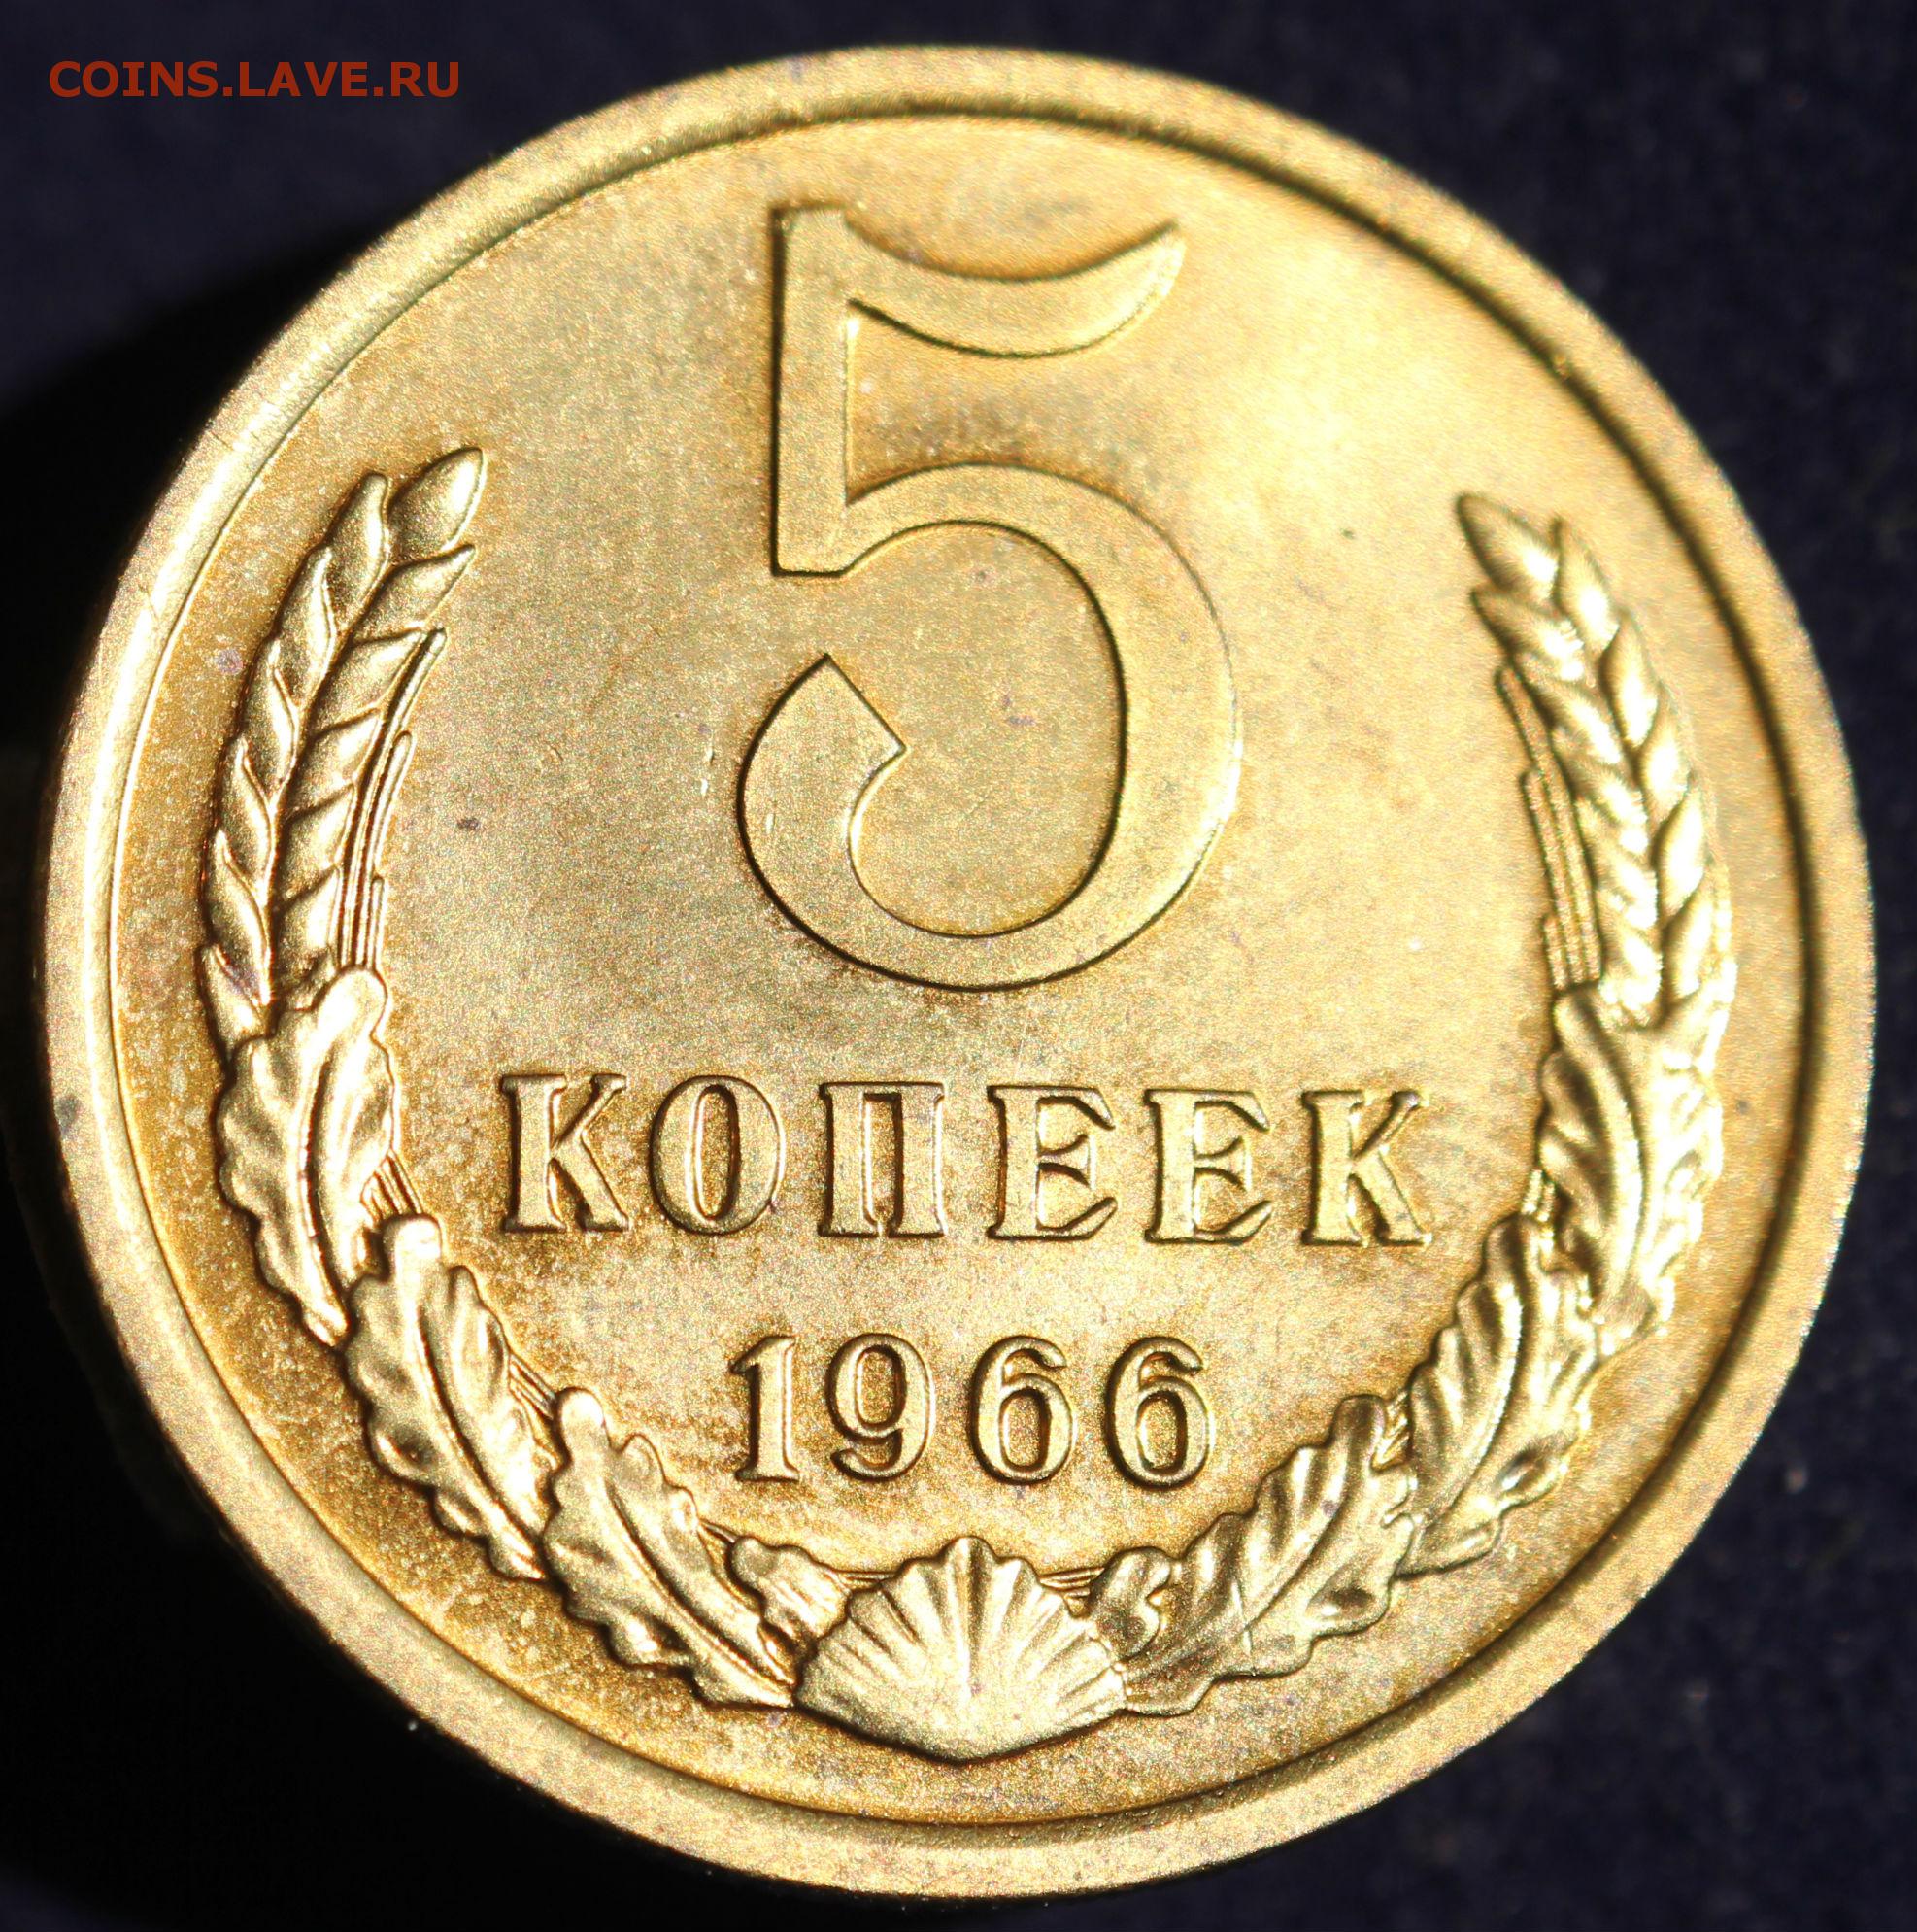 3 рубля 5 копеек. Монета 5 копеек СССР. Редкие монеты СССР 5 копеек. 5 Копеек 1966 года. 5 Копеек 1970 года.